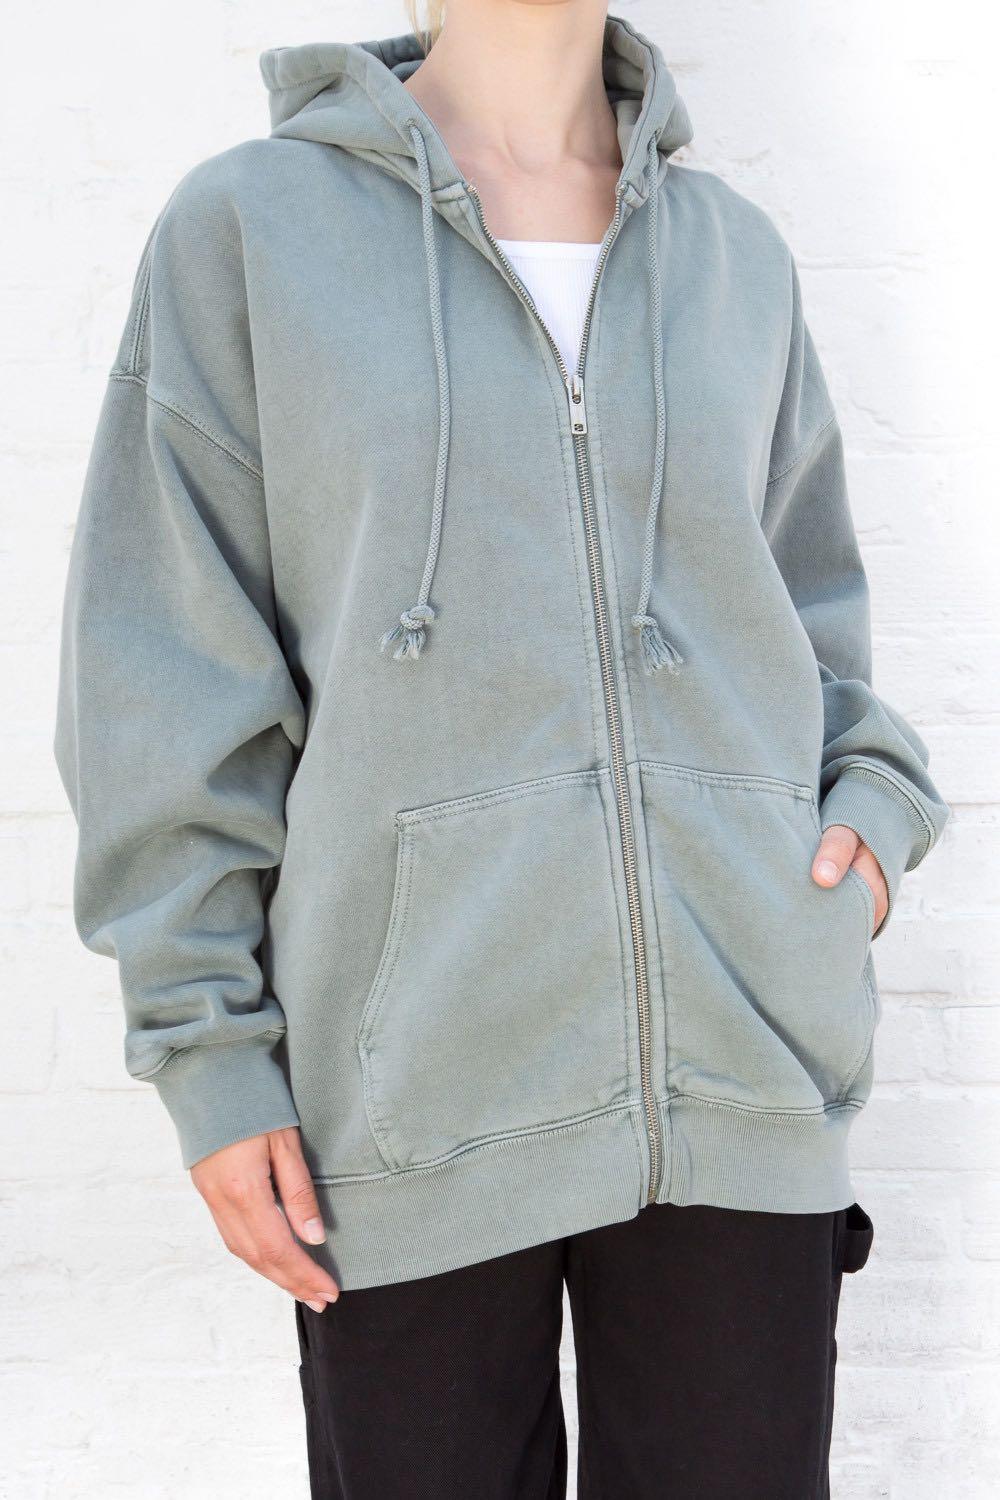 oversized gray zip up sweater hoodie, brandy melville christy hoodie look  alike